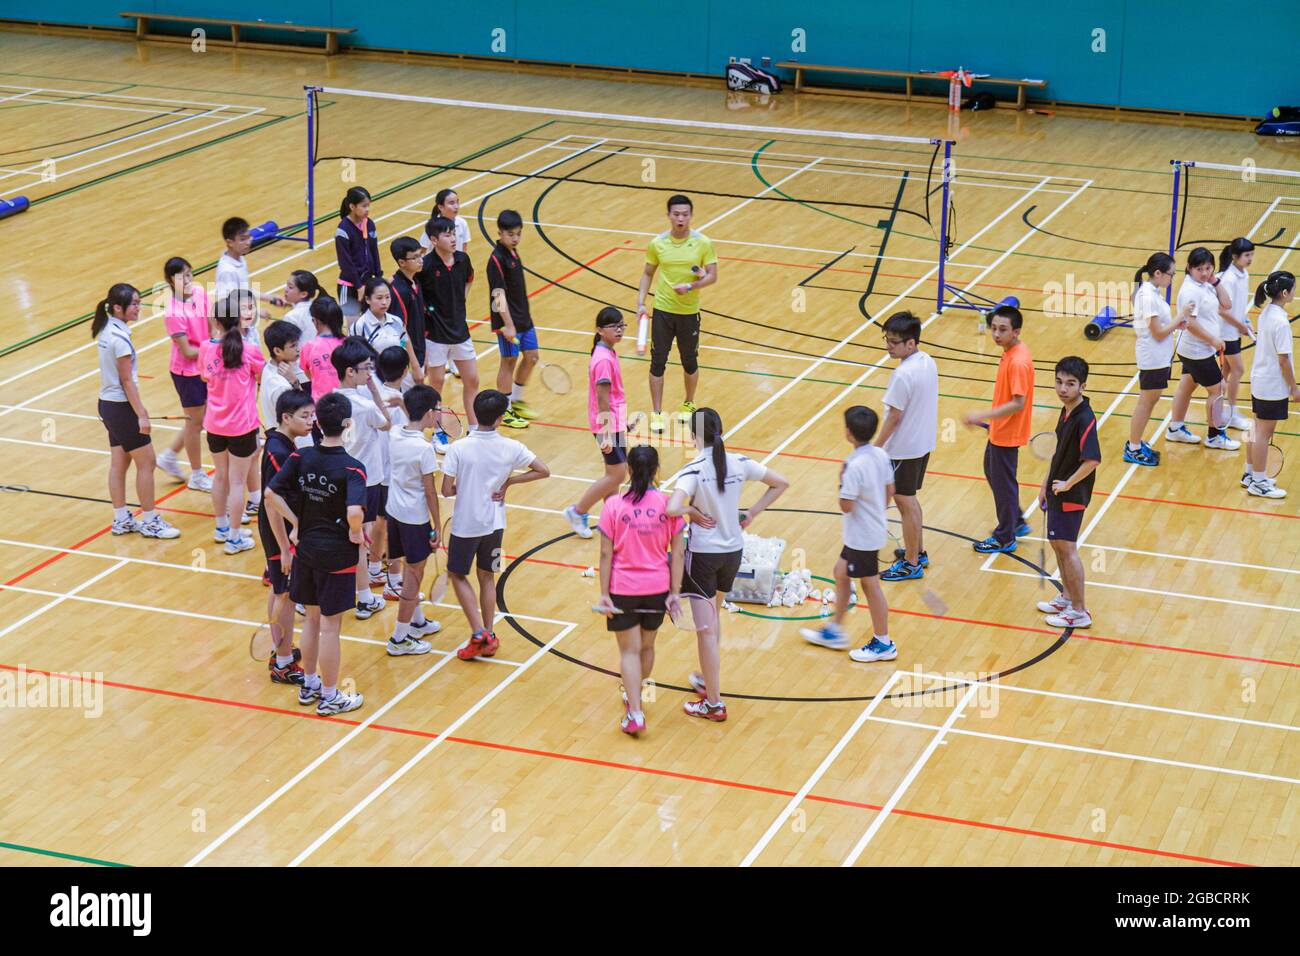 Chine Hong Kong Hong Kong HK Island, centre sportif de Hong Kong Park Centre, terrains de badminton intérieur salle de gym gymnase asiatique, filles garçons étudiants adolescents tee Banque D'Images